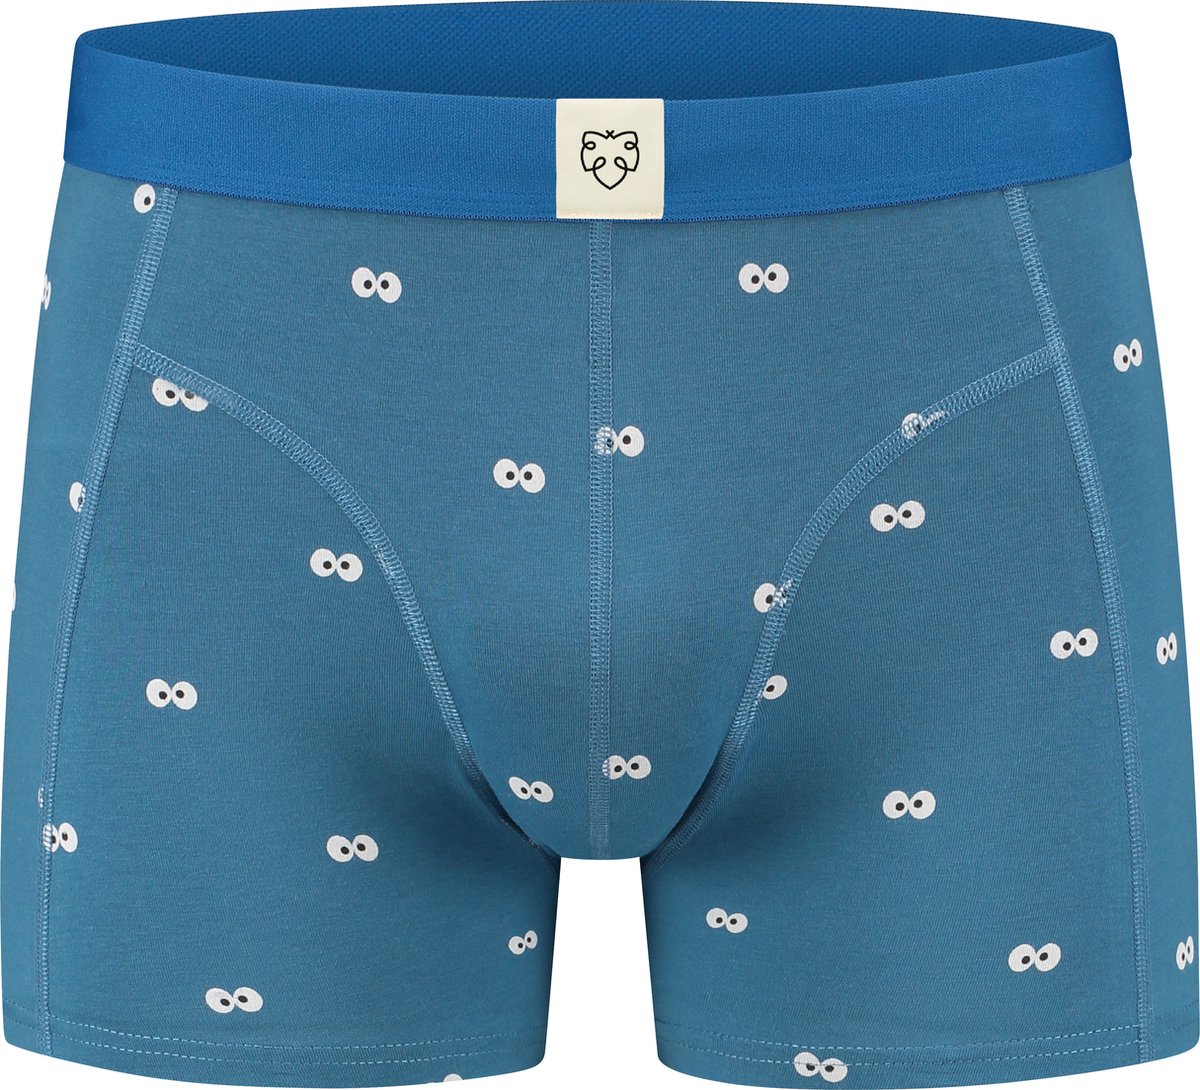 A-dam Googly Cookie Monster - Boxershort - Katoen - Onderbroek - Ondergoed - Heren - Blauw - XL